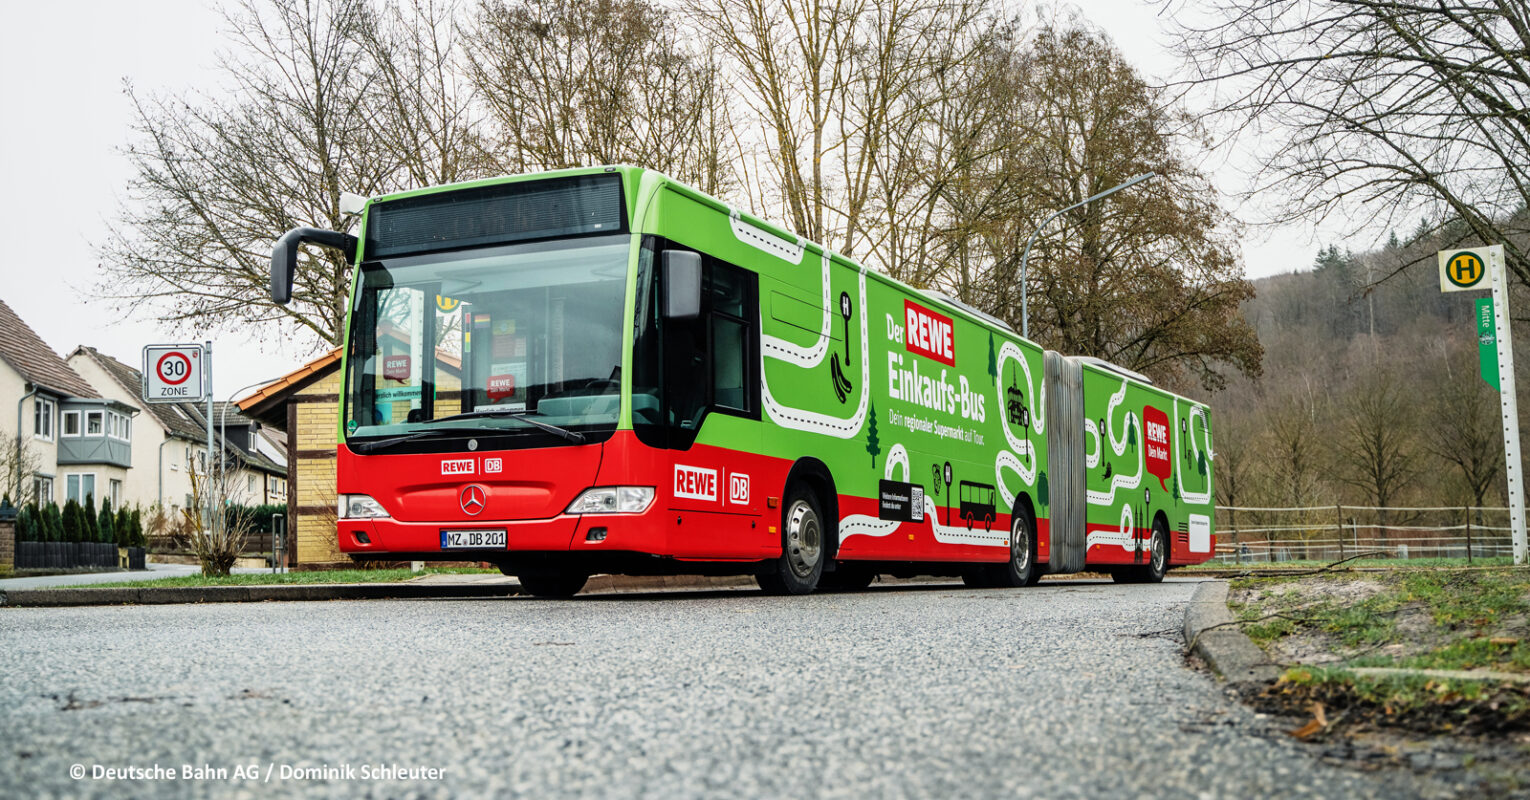 DB Regio und Rewe bringen Einkaufs-Bus auf die Straße